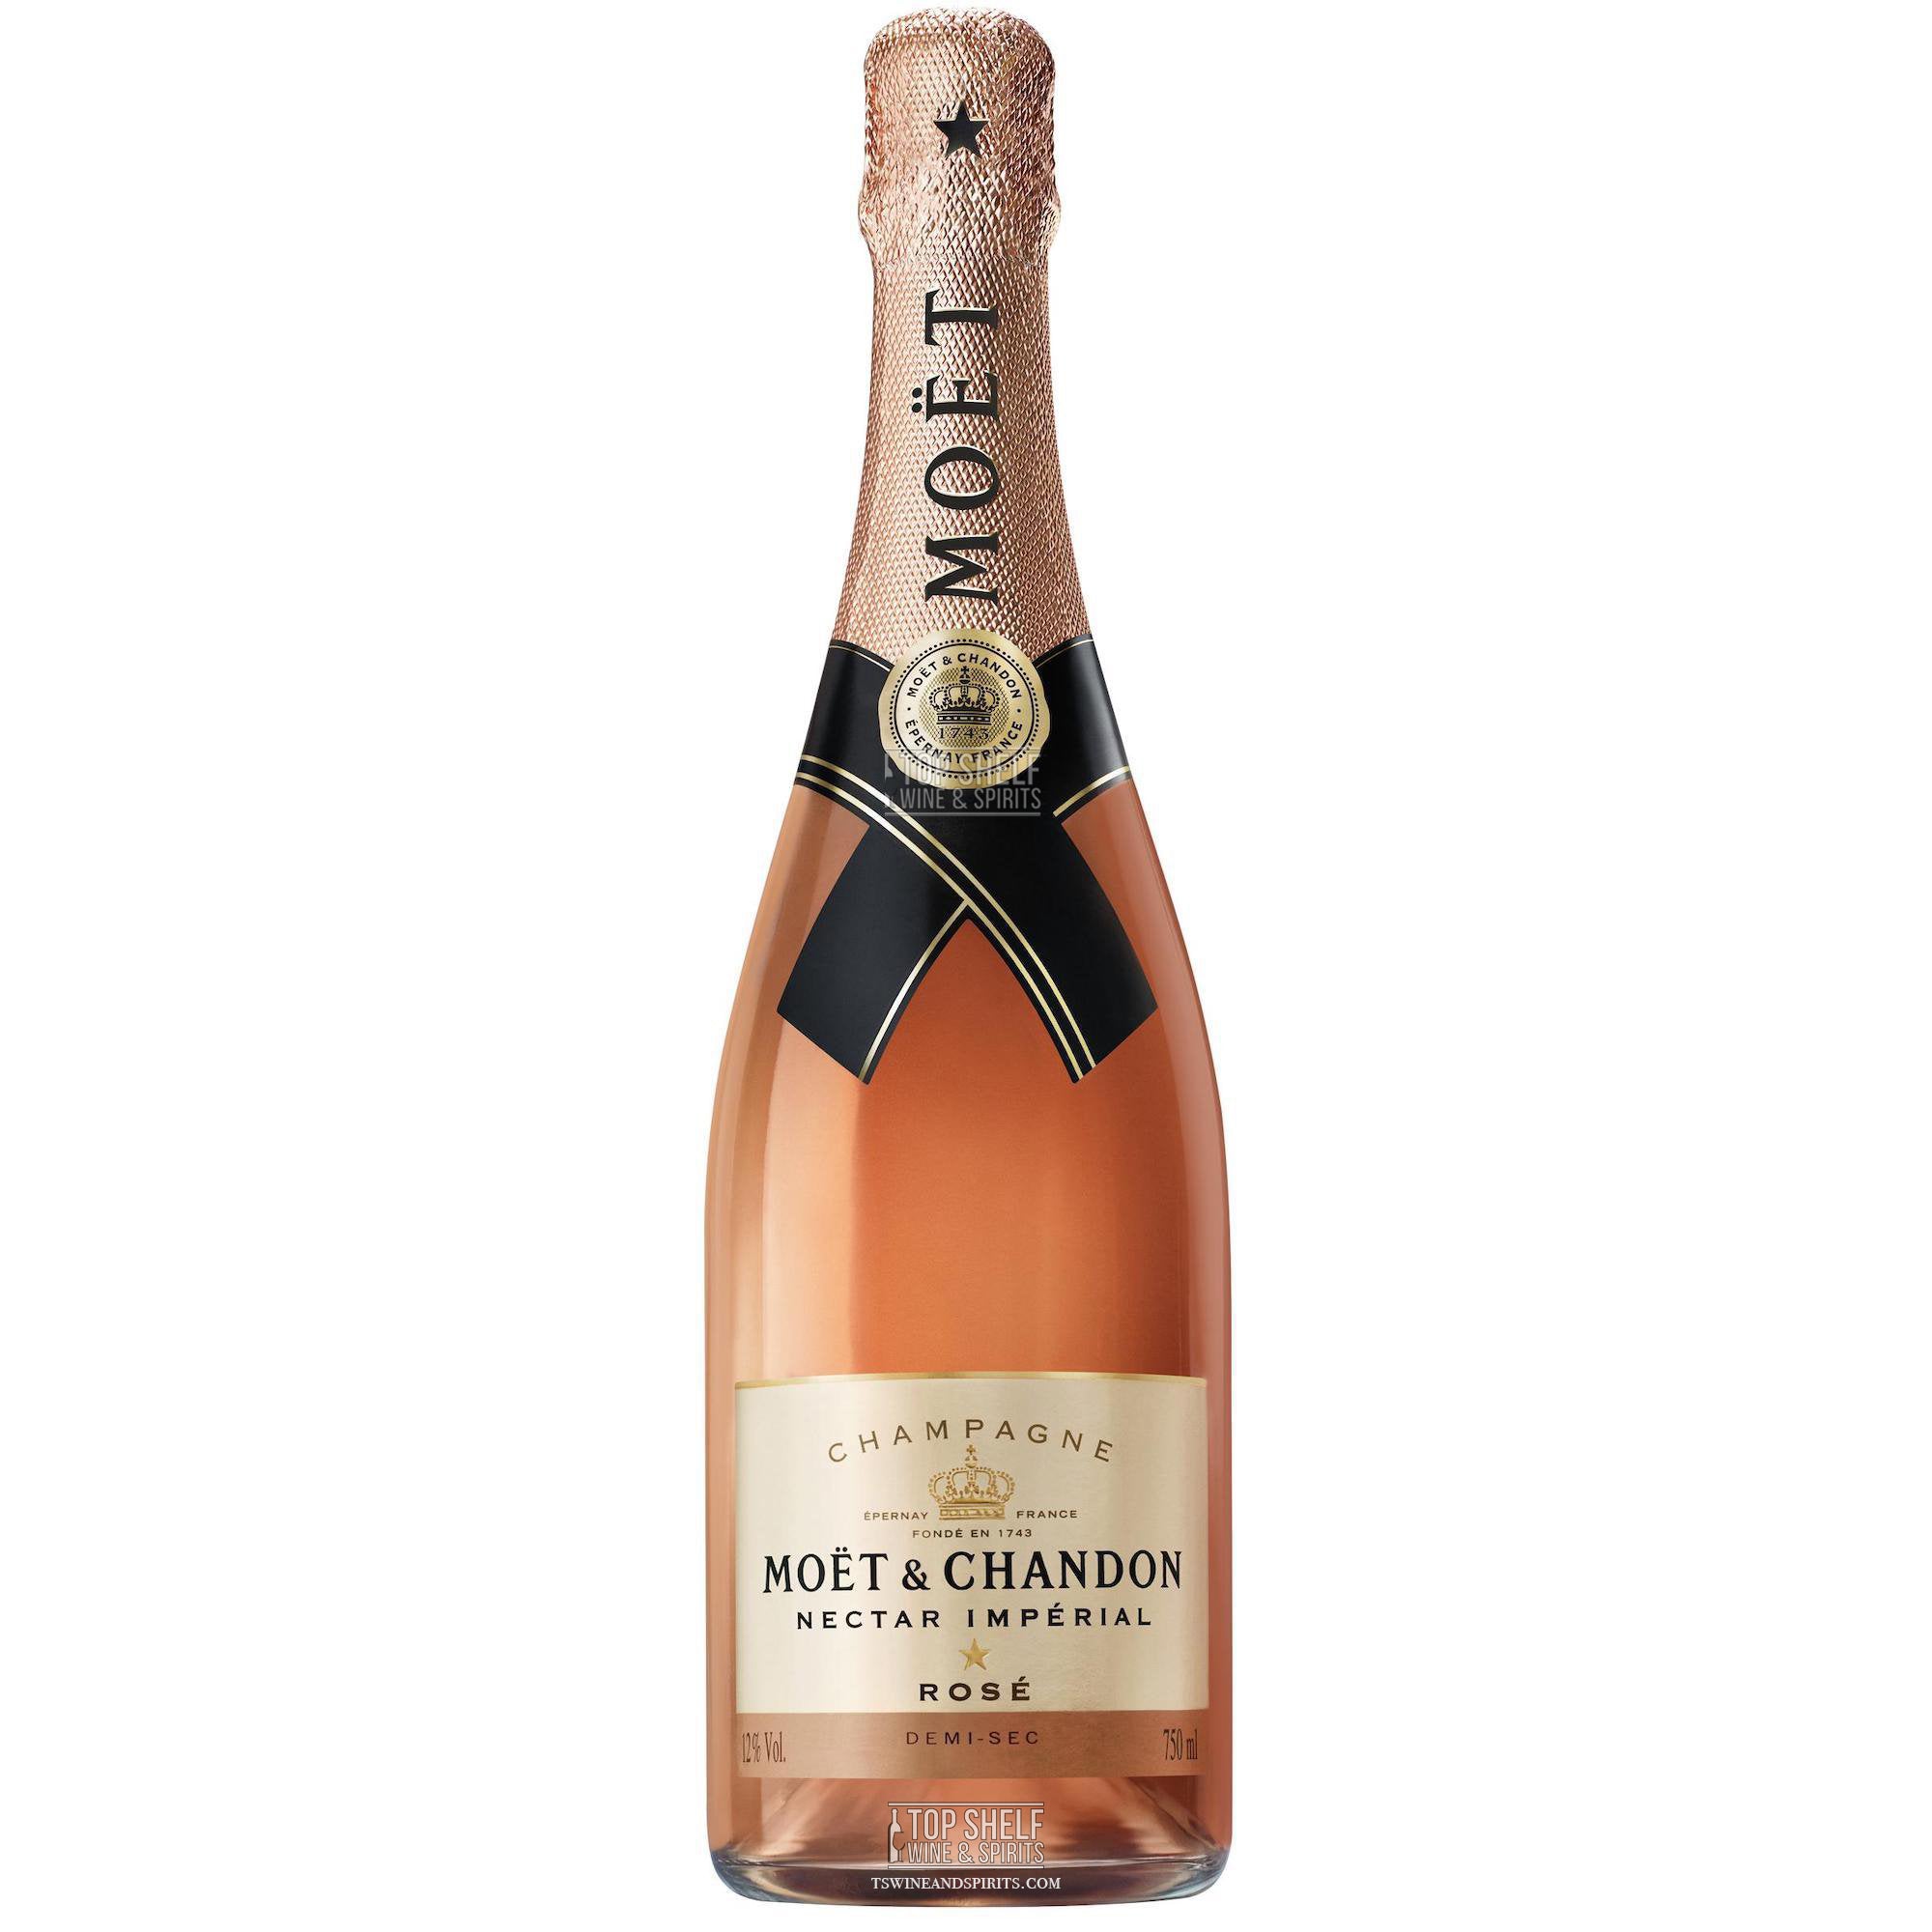 Buy Moët & Chandon Rosé Impérial. Champagne